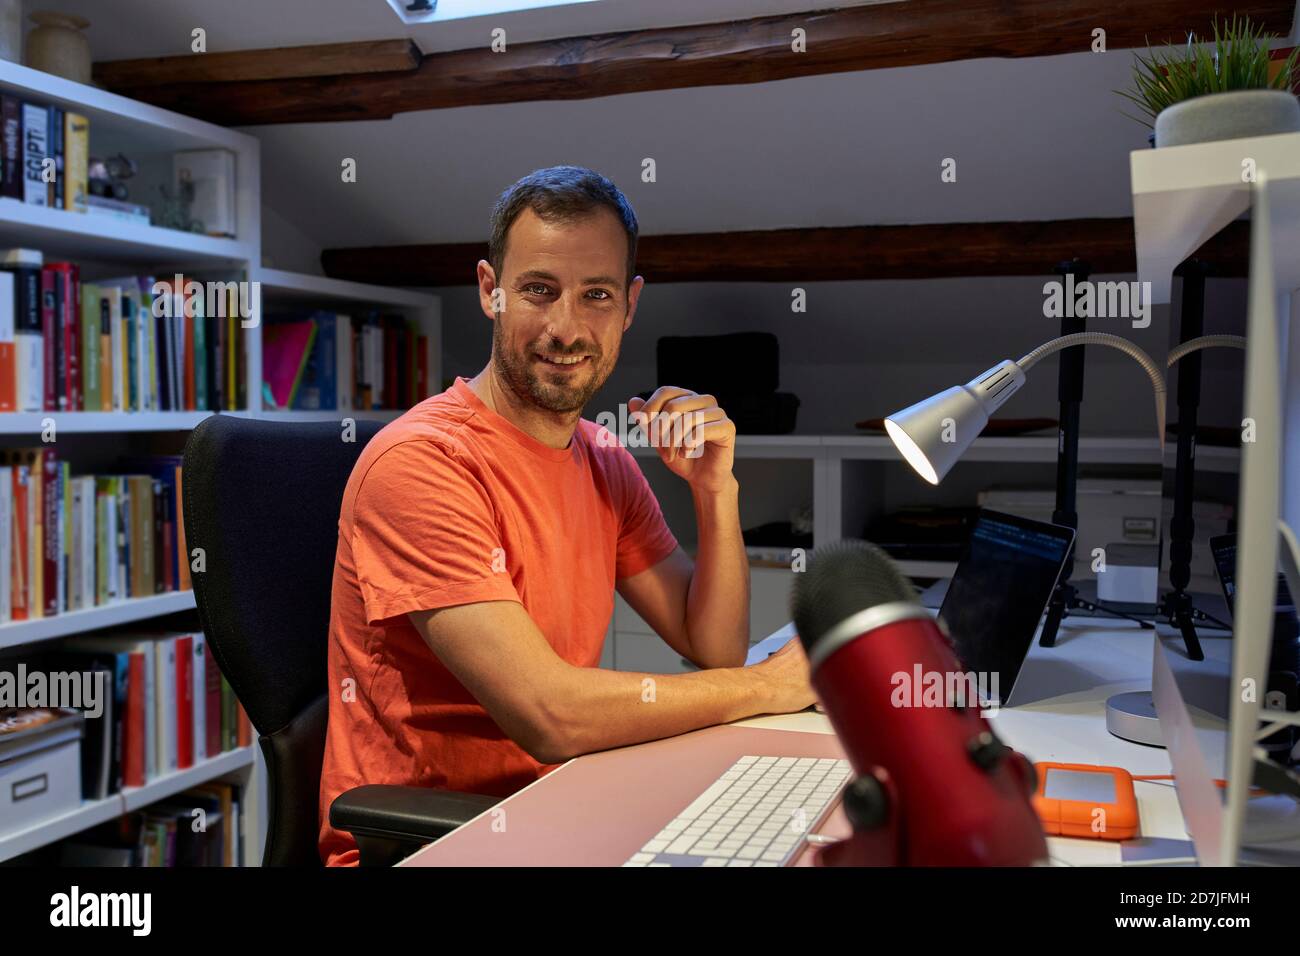 Homme souriant travaillant sur un ordinateur portable assis à la maison Banque D'Images